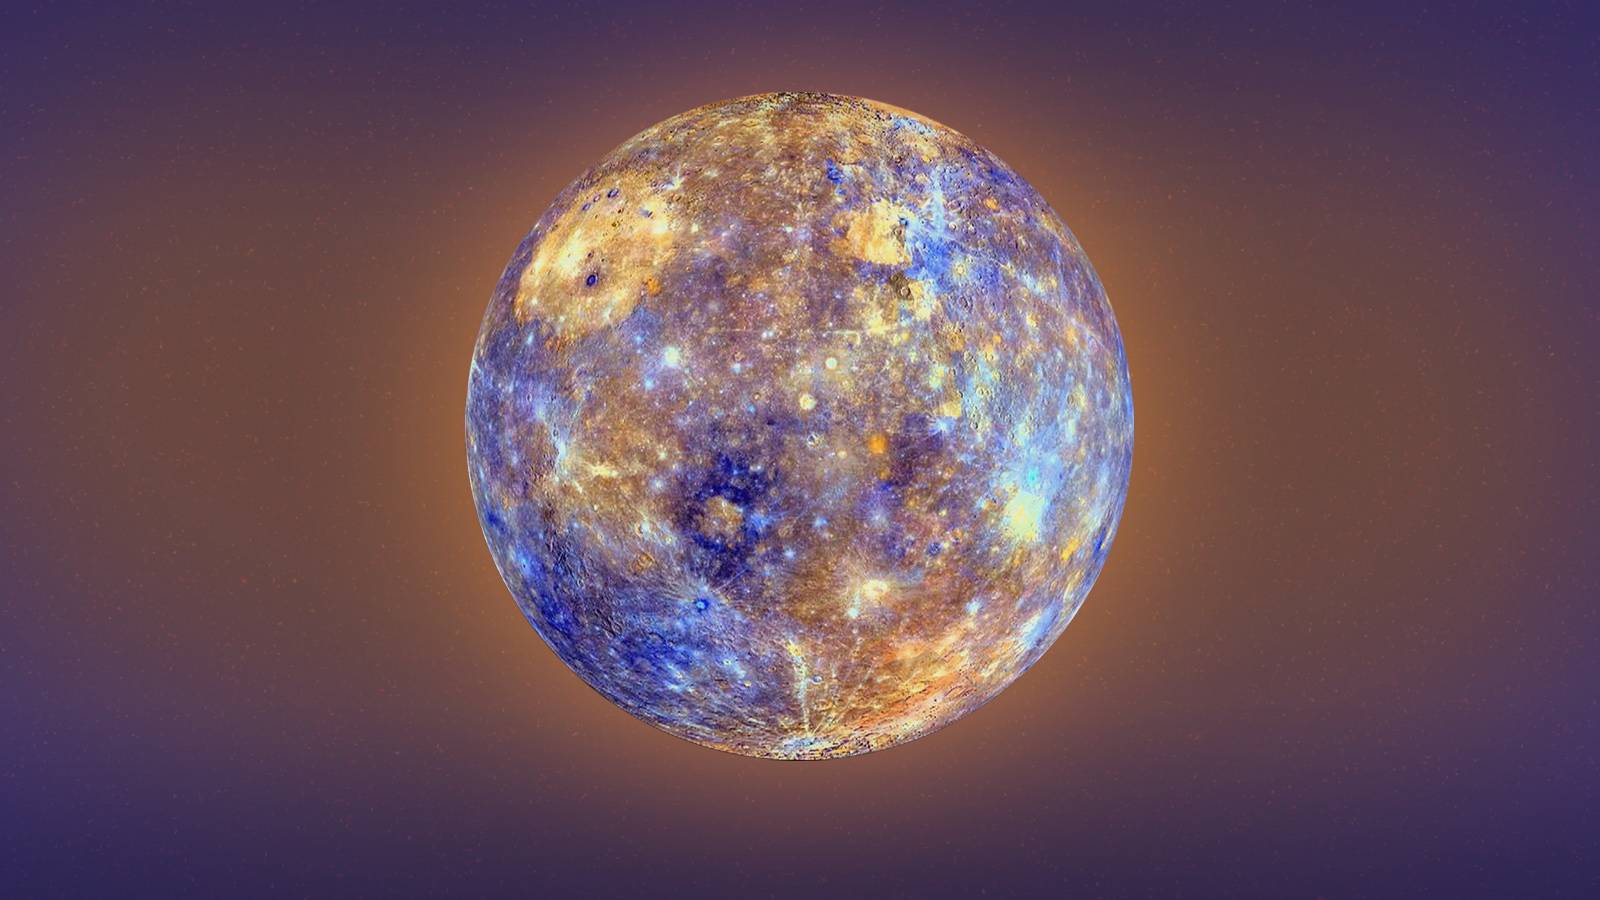 Planet Mercury sounds